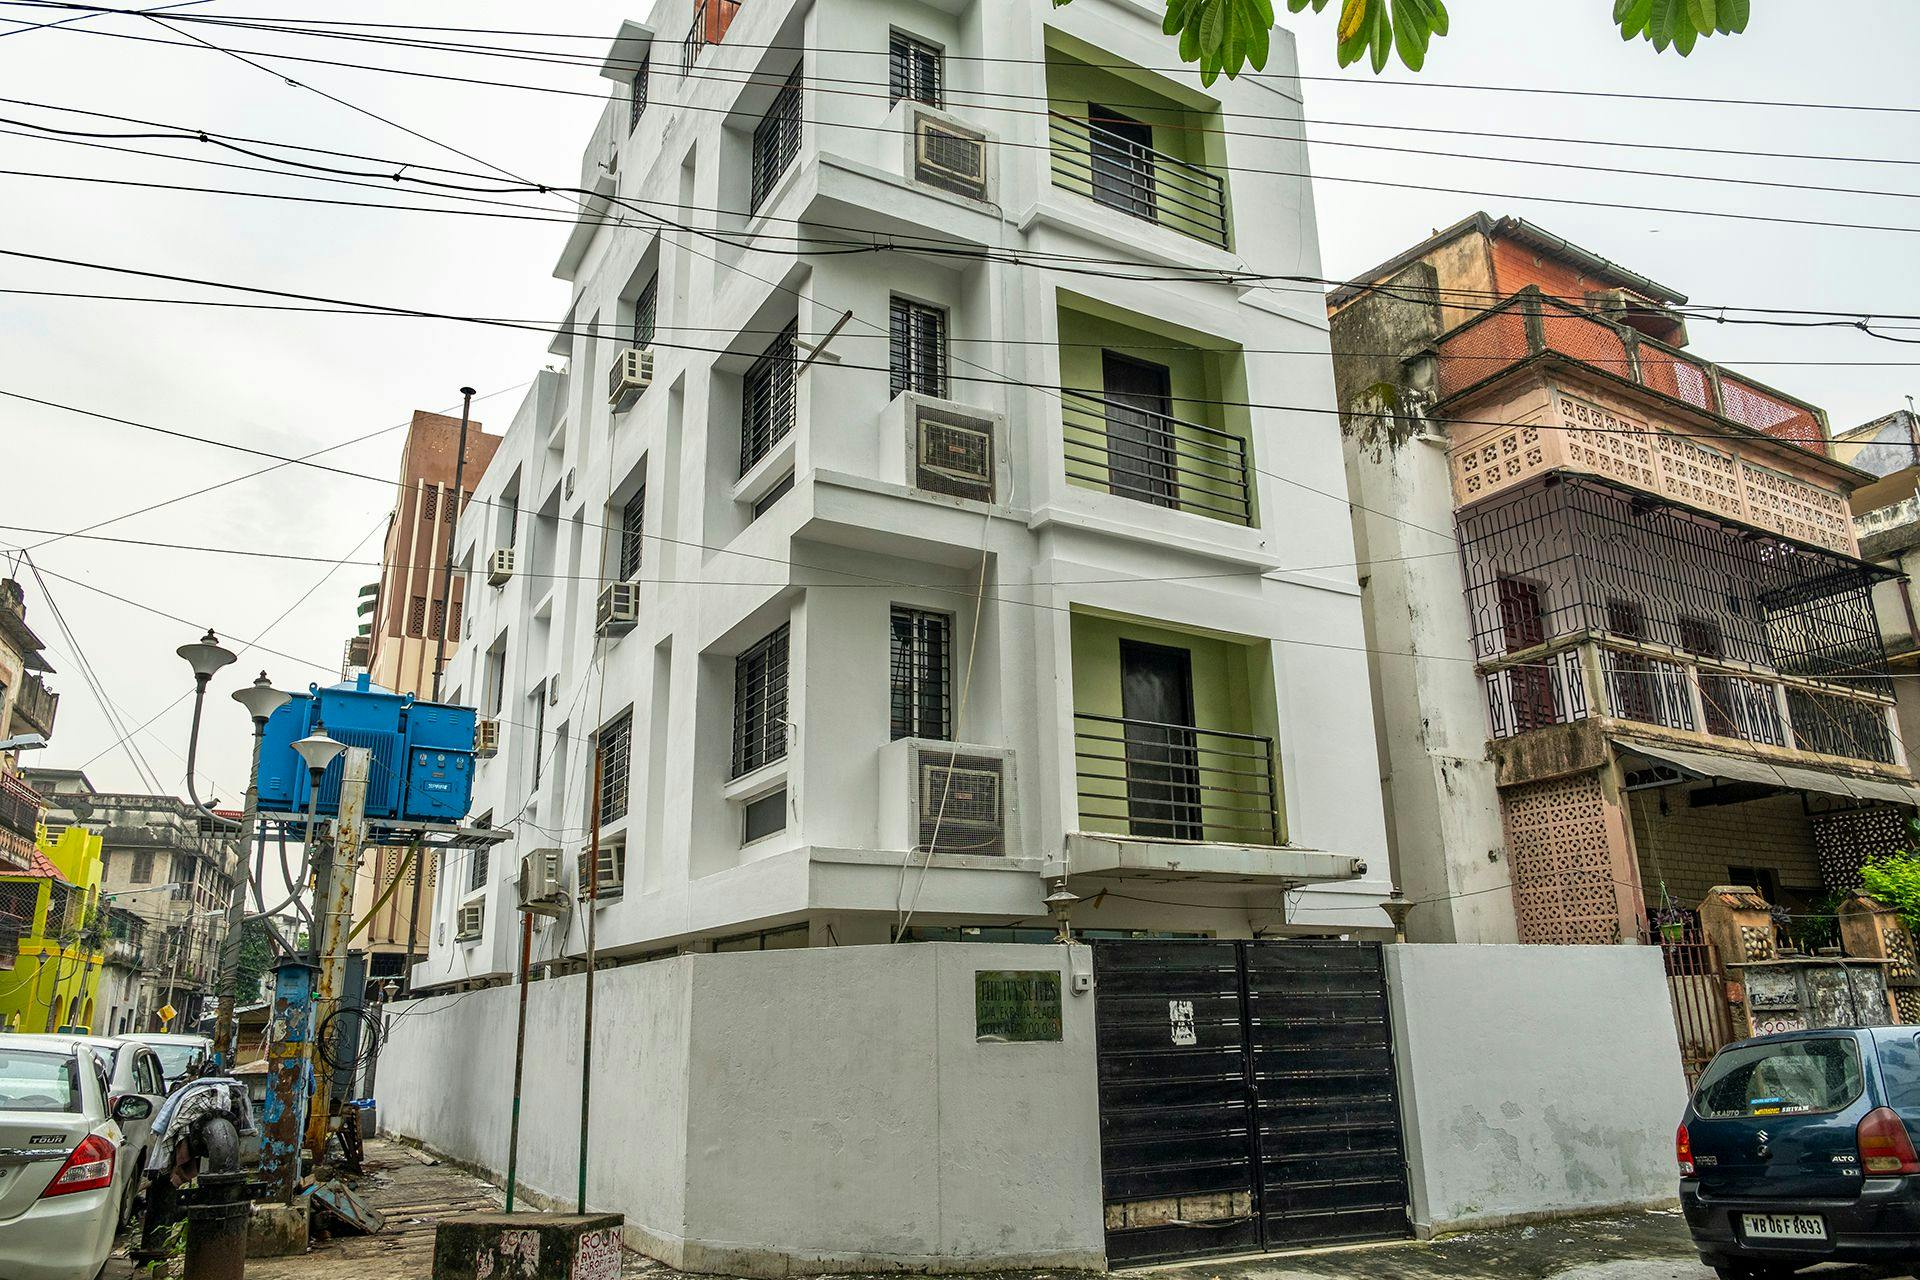 Former location of Bina Das’s home